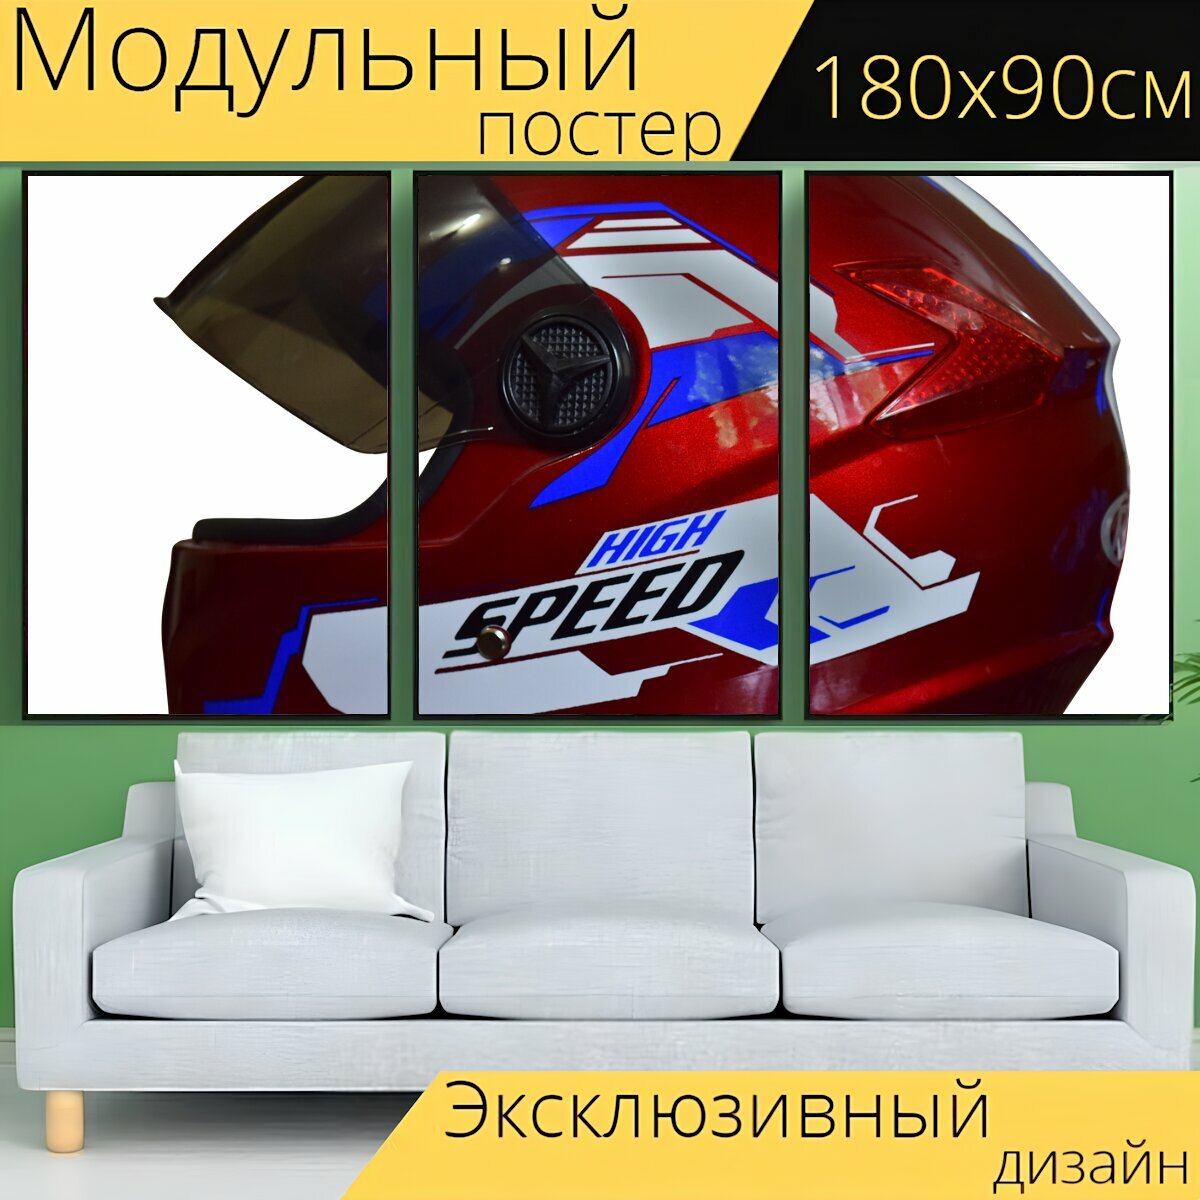 Модульный постер "Шлем, скутер, транспортное средство" 180 x 90 см. для интерьера